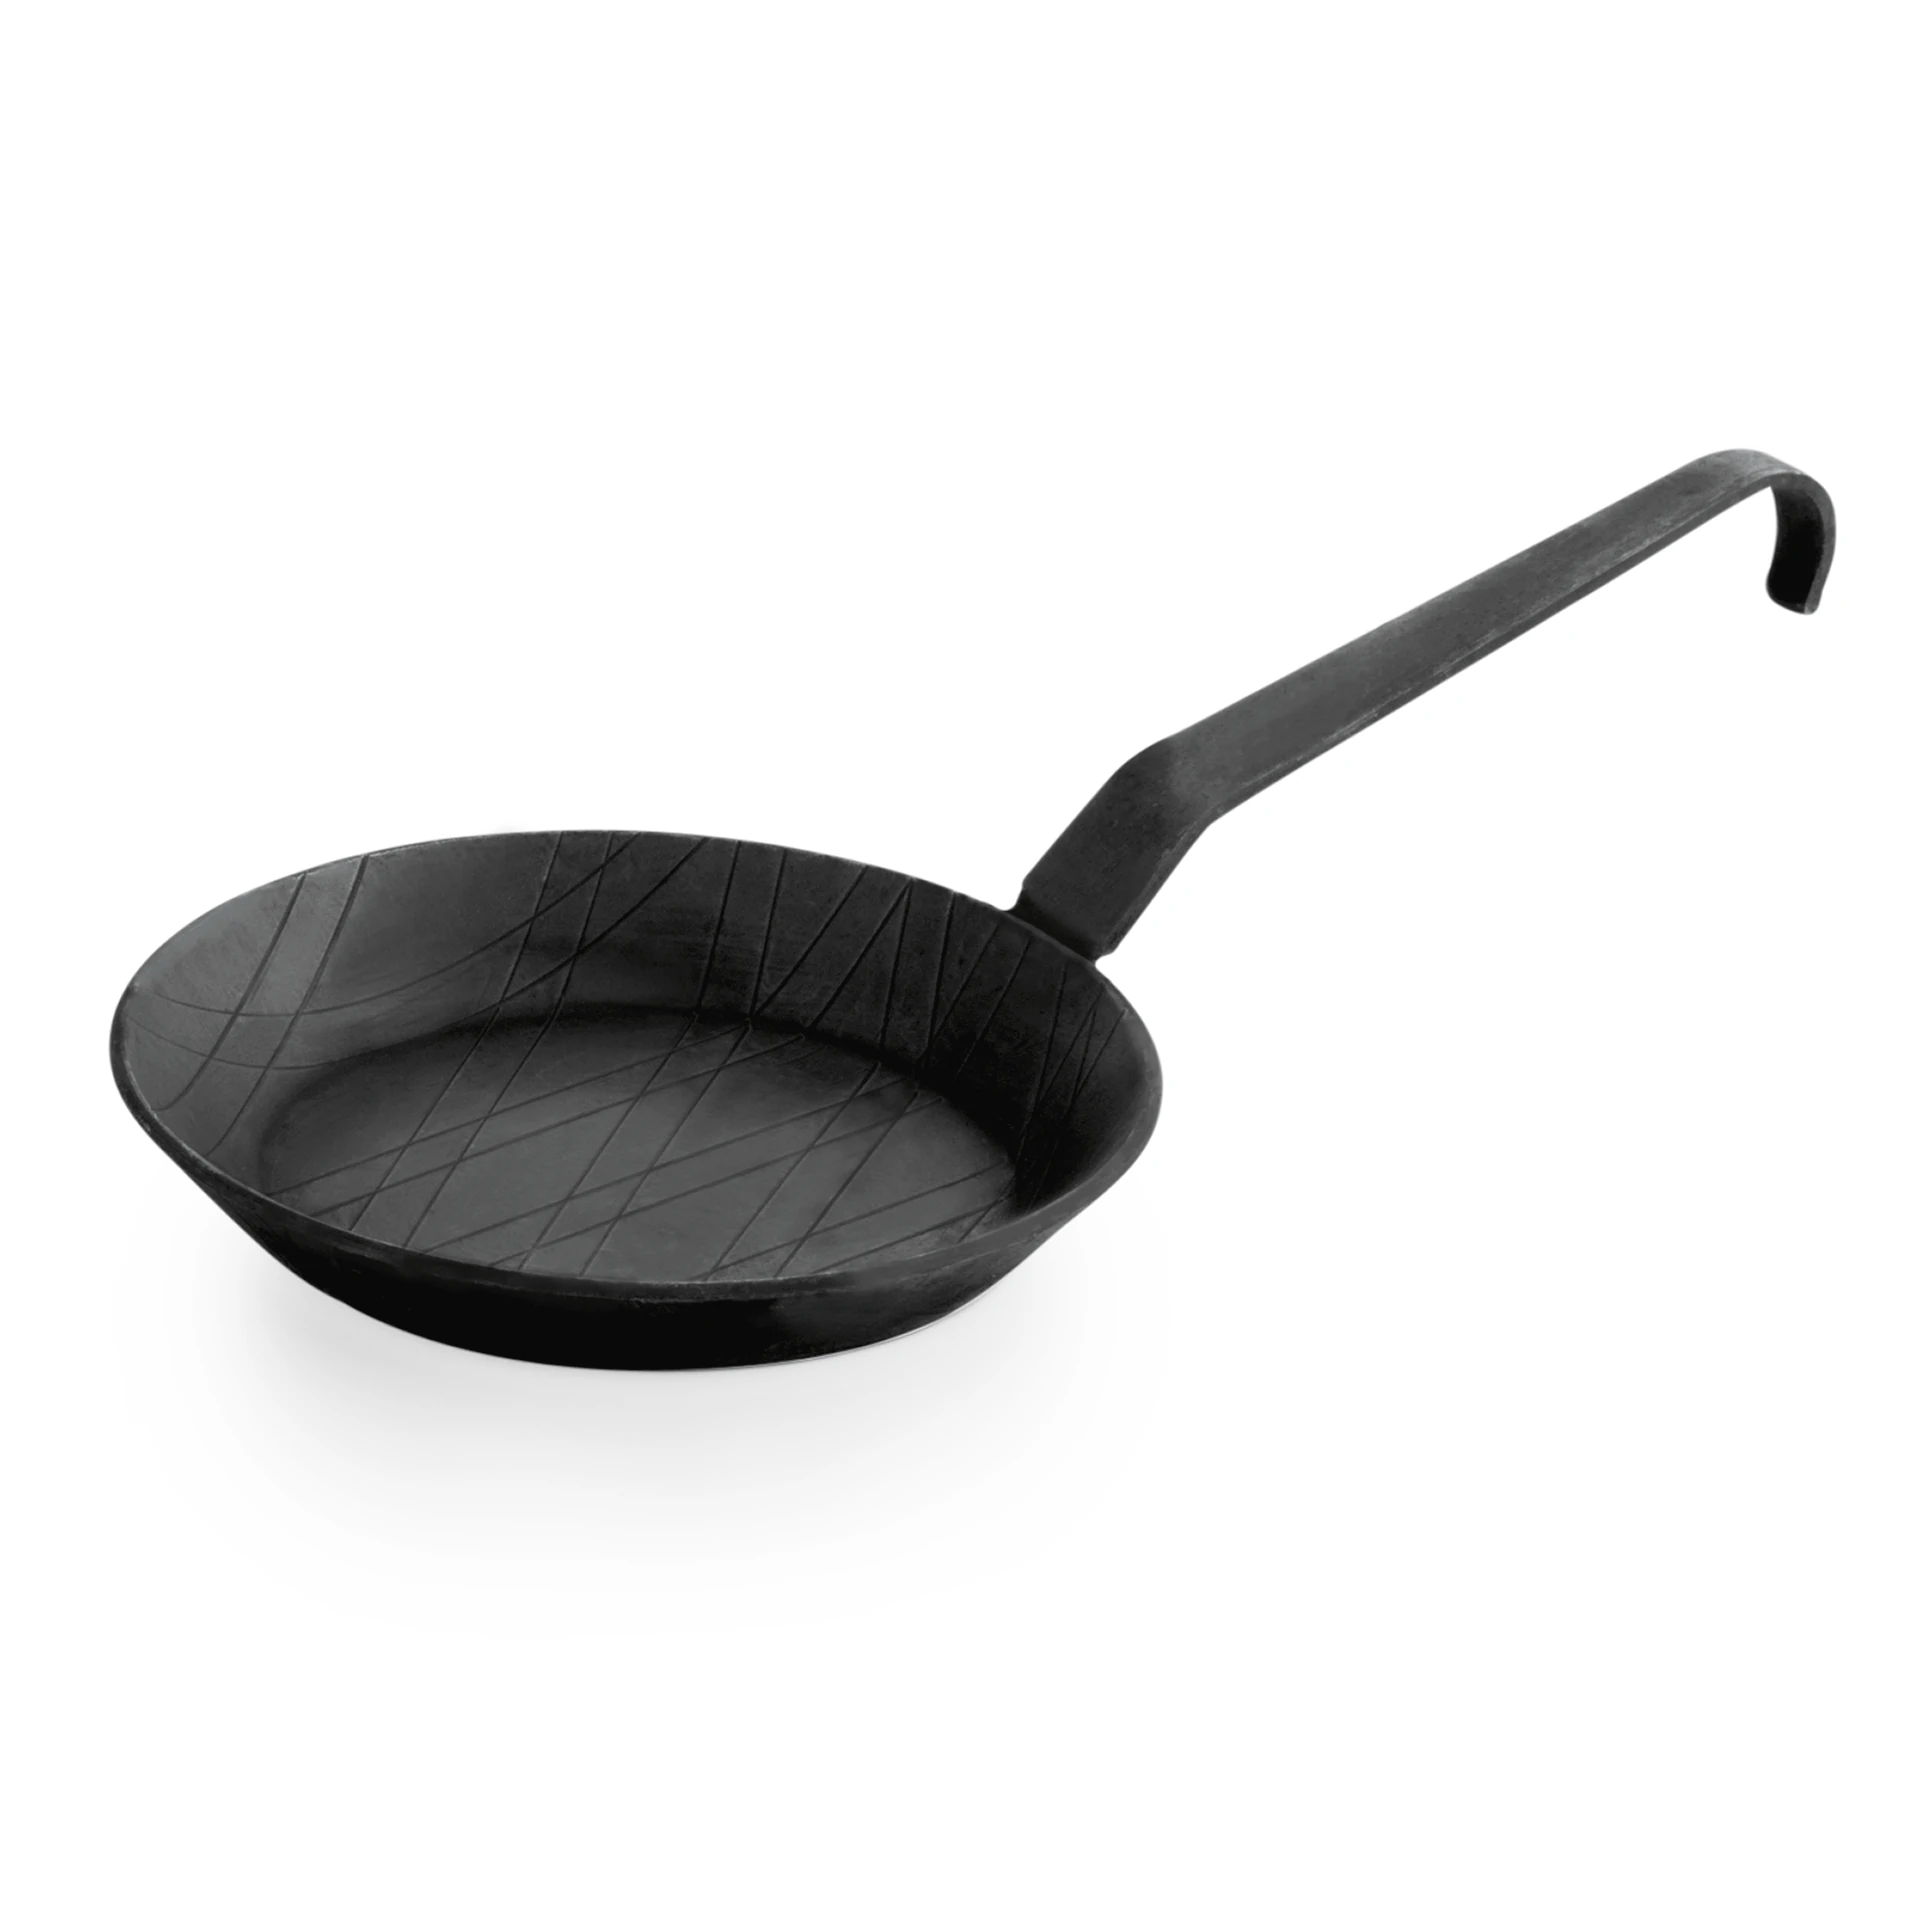 Frying/serving pan